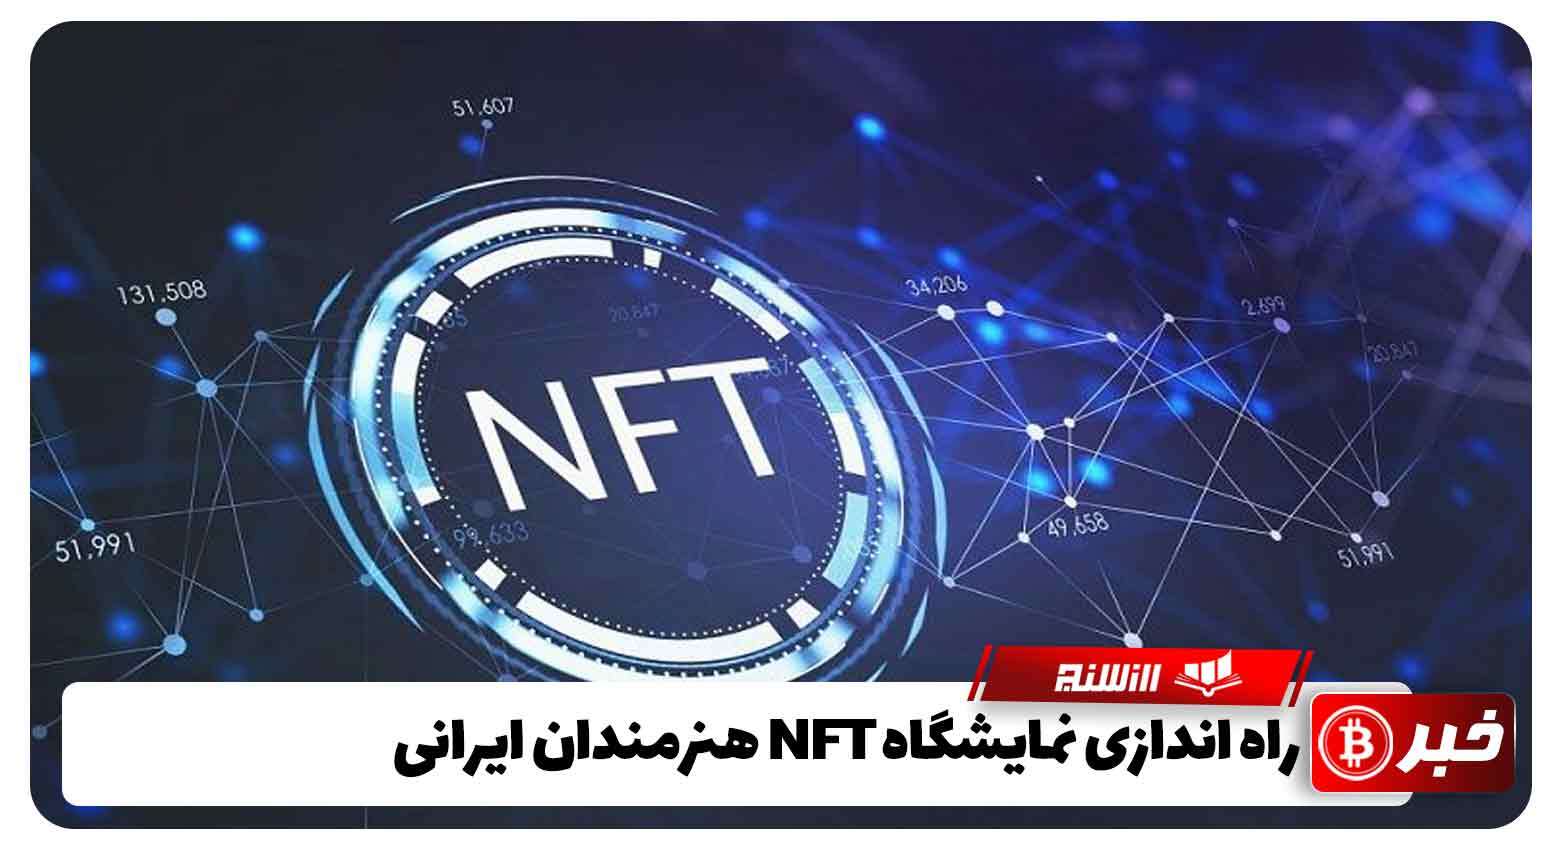 راه اندازی نمایشگاه NFT هنرمندان ایرانی